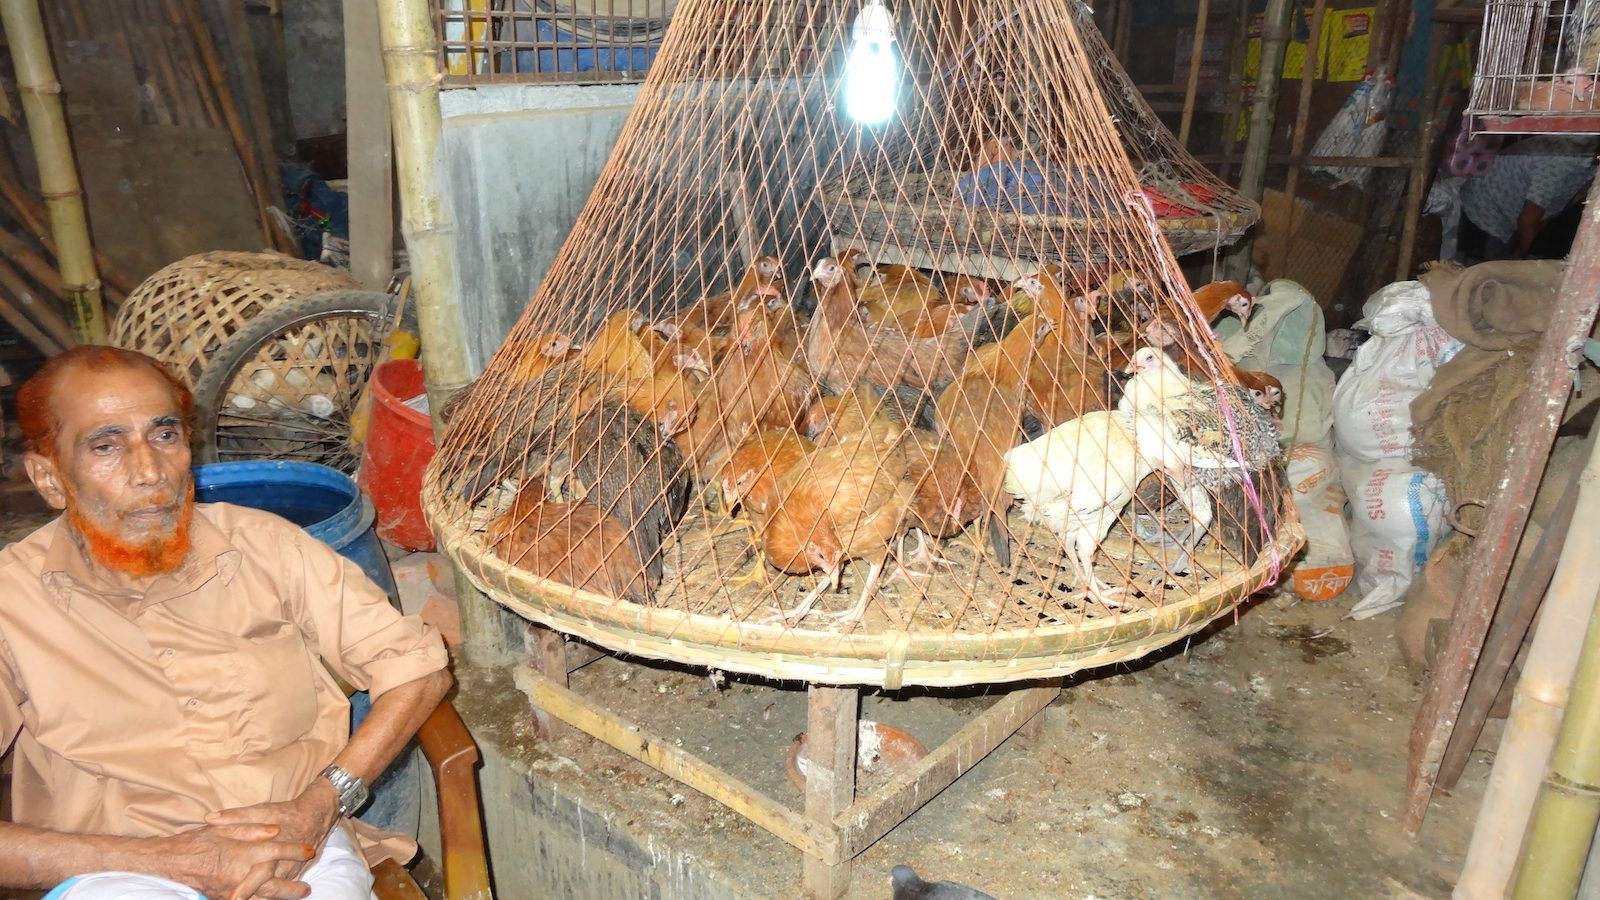 Man next to caged chickens in live bird market, Bangladesh